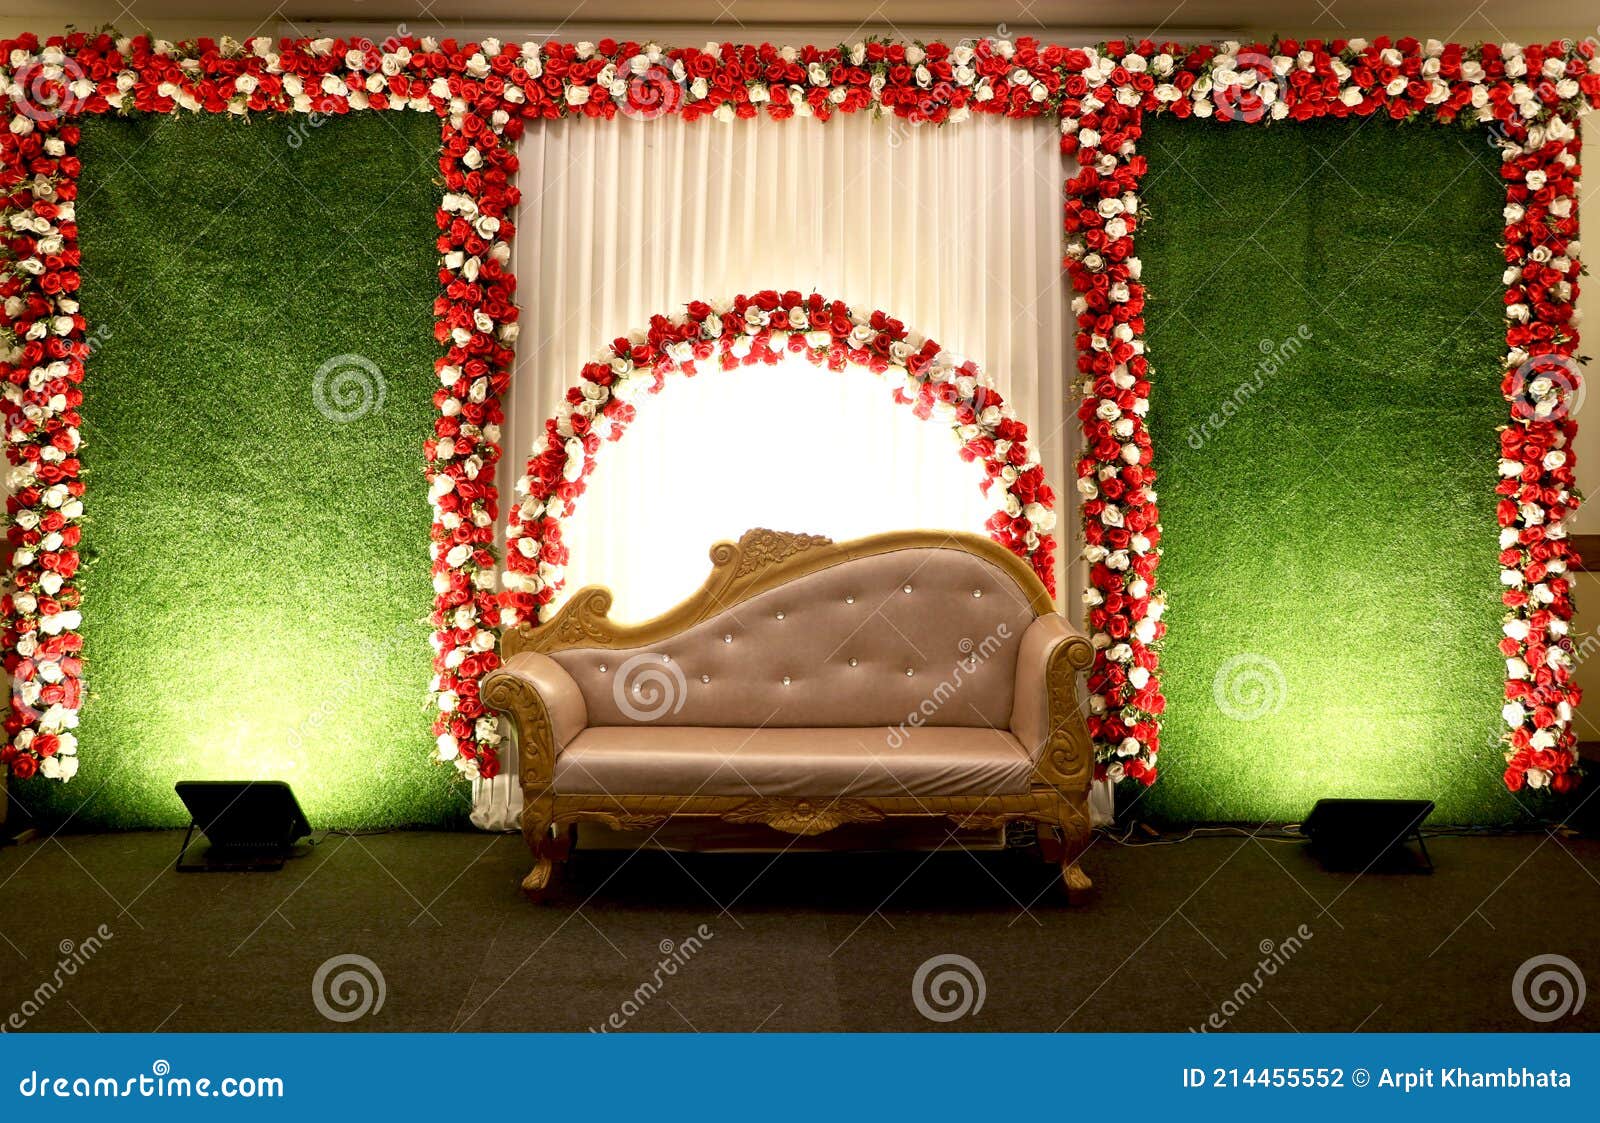 Wedding stage decoration stock photo. Image of background - 214455552